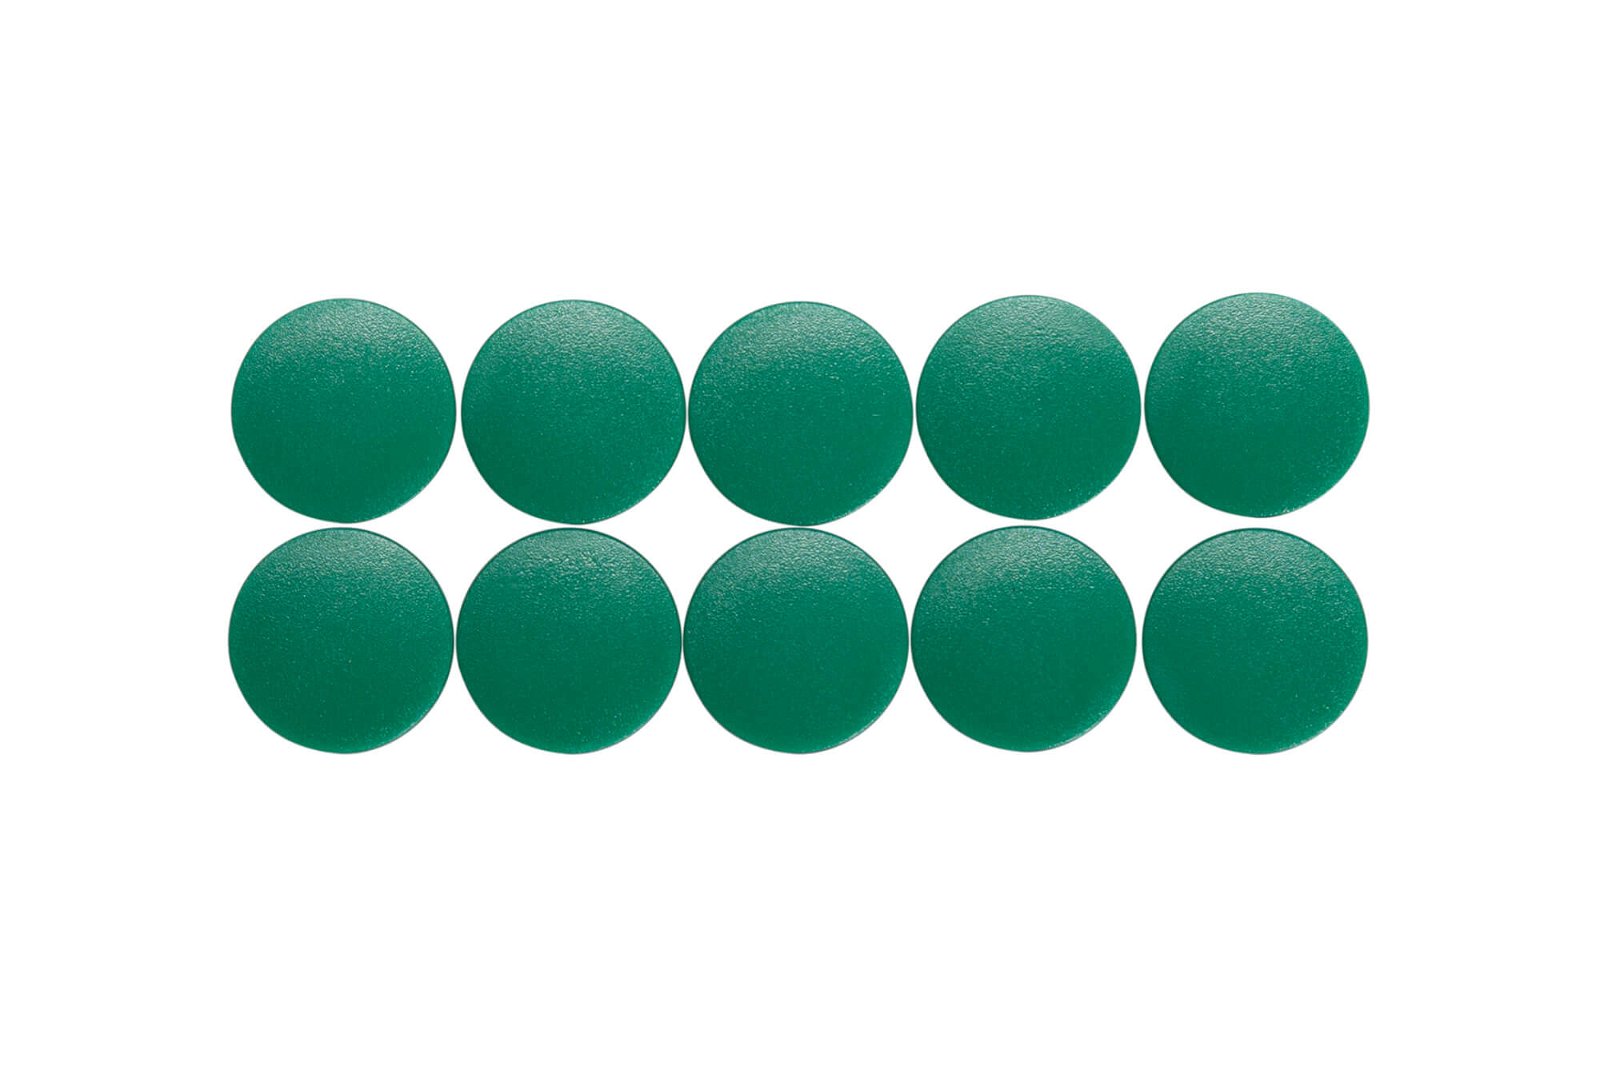 Magnet MAULsolid Ø 20 mm, 0,3 kg Haftkraft, 10 St./Ktn., grün